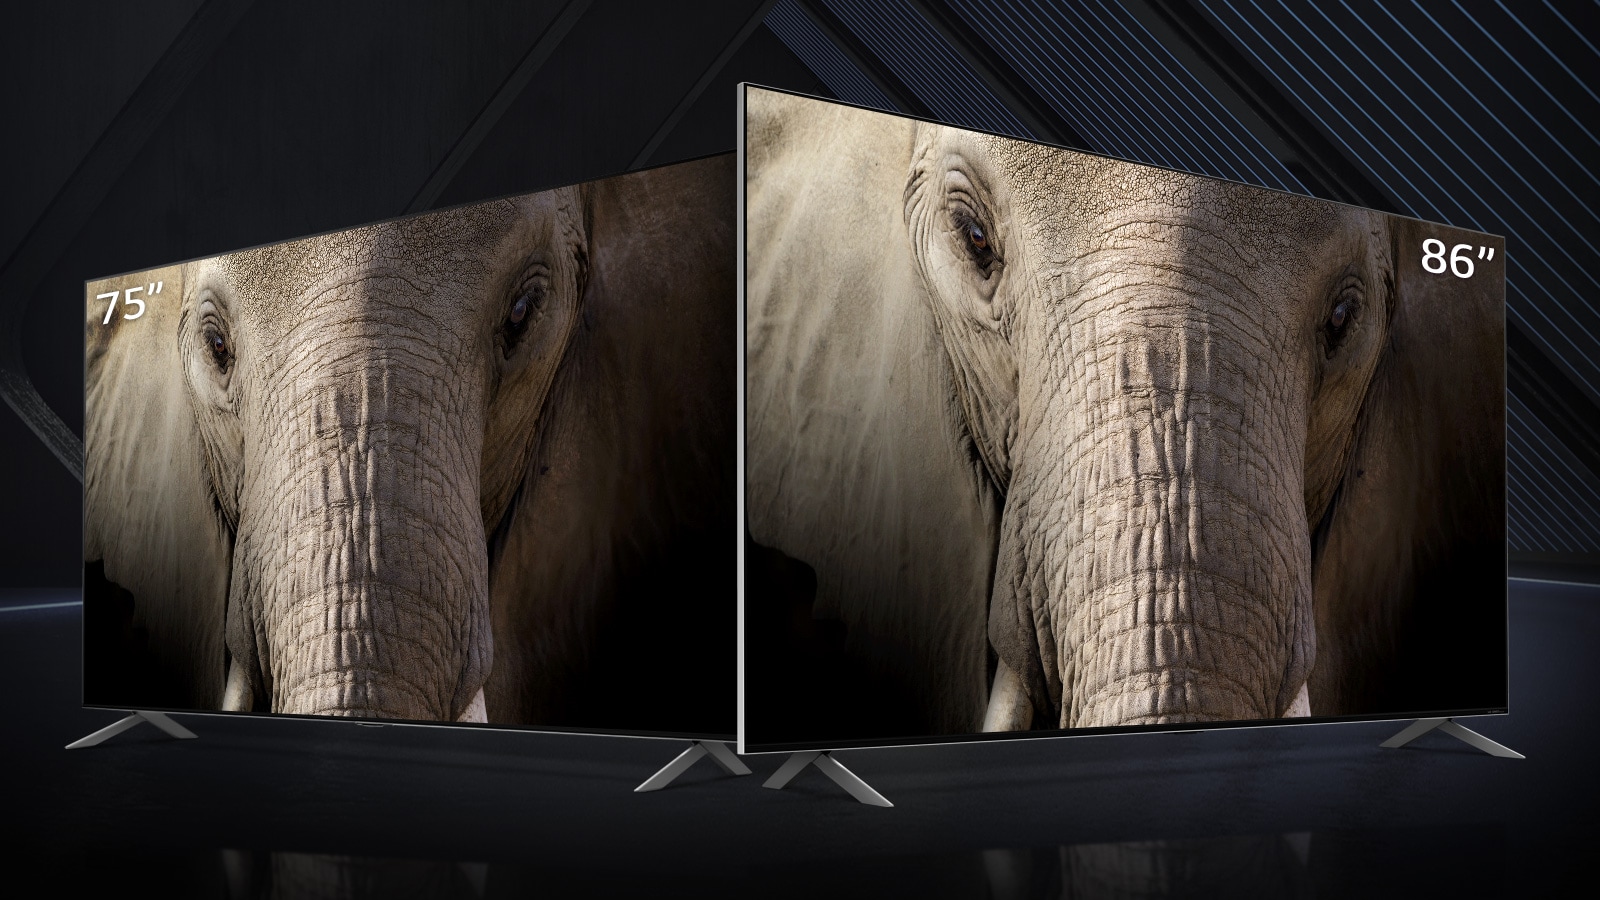 TV LG QNED Mini LED 75 và 86 inch siêu lớn đặt cạnh nhau trên phông nền tối. Màn hình hiển thị hình ảnh cận cảnh khuôn mặt của một con voi.